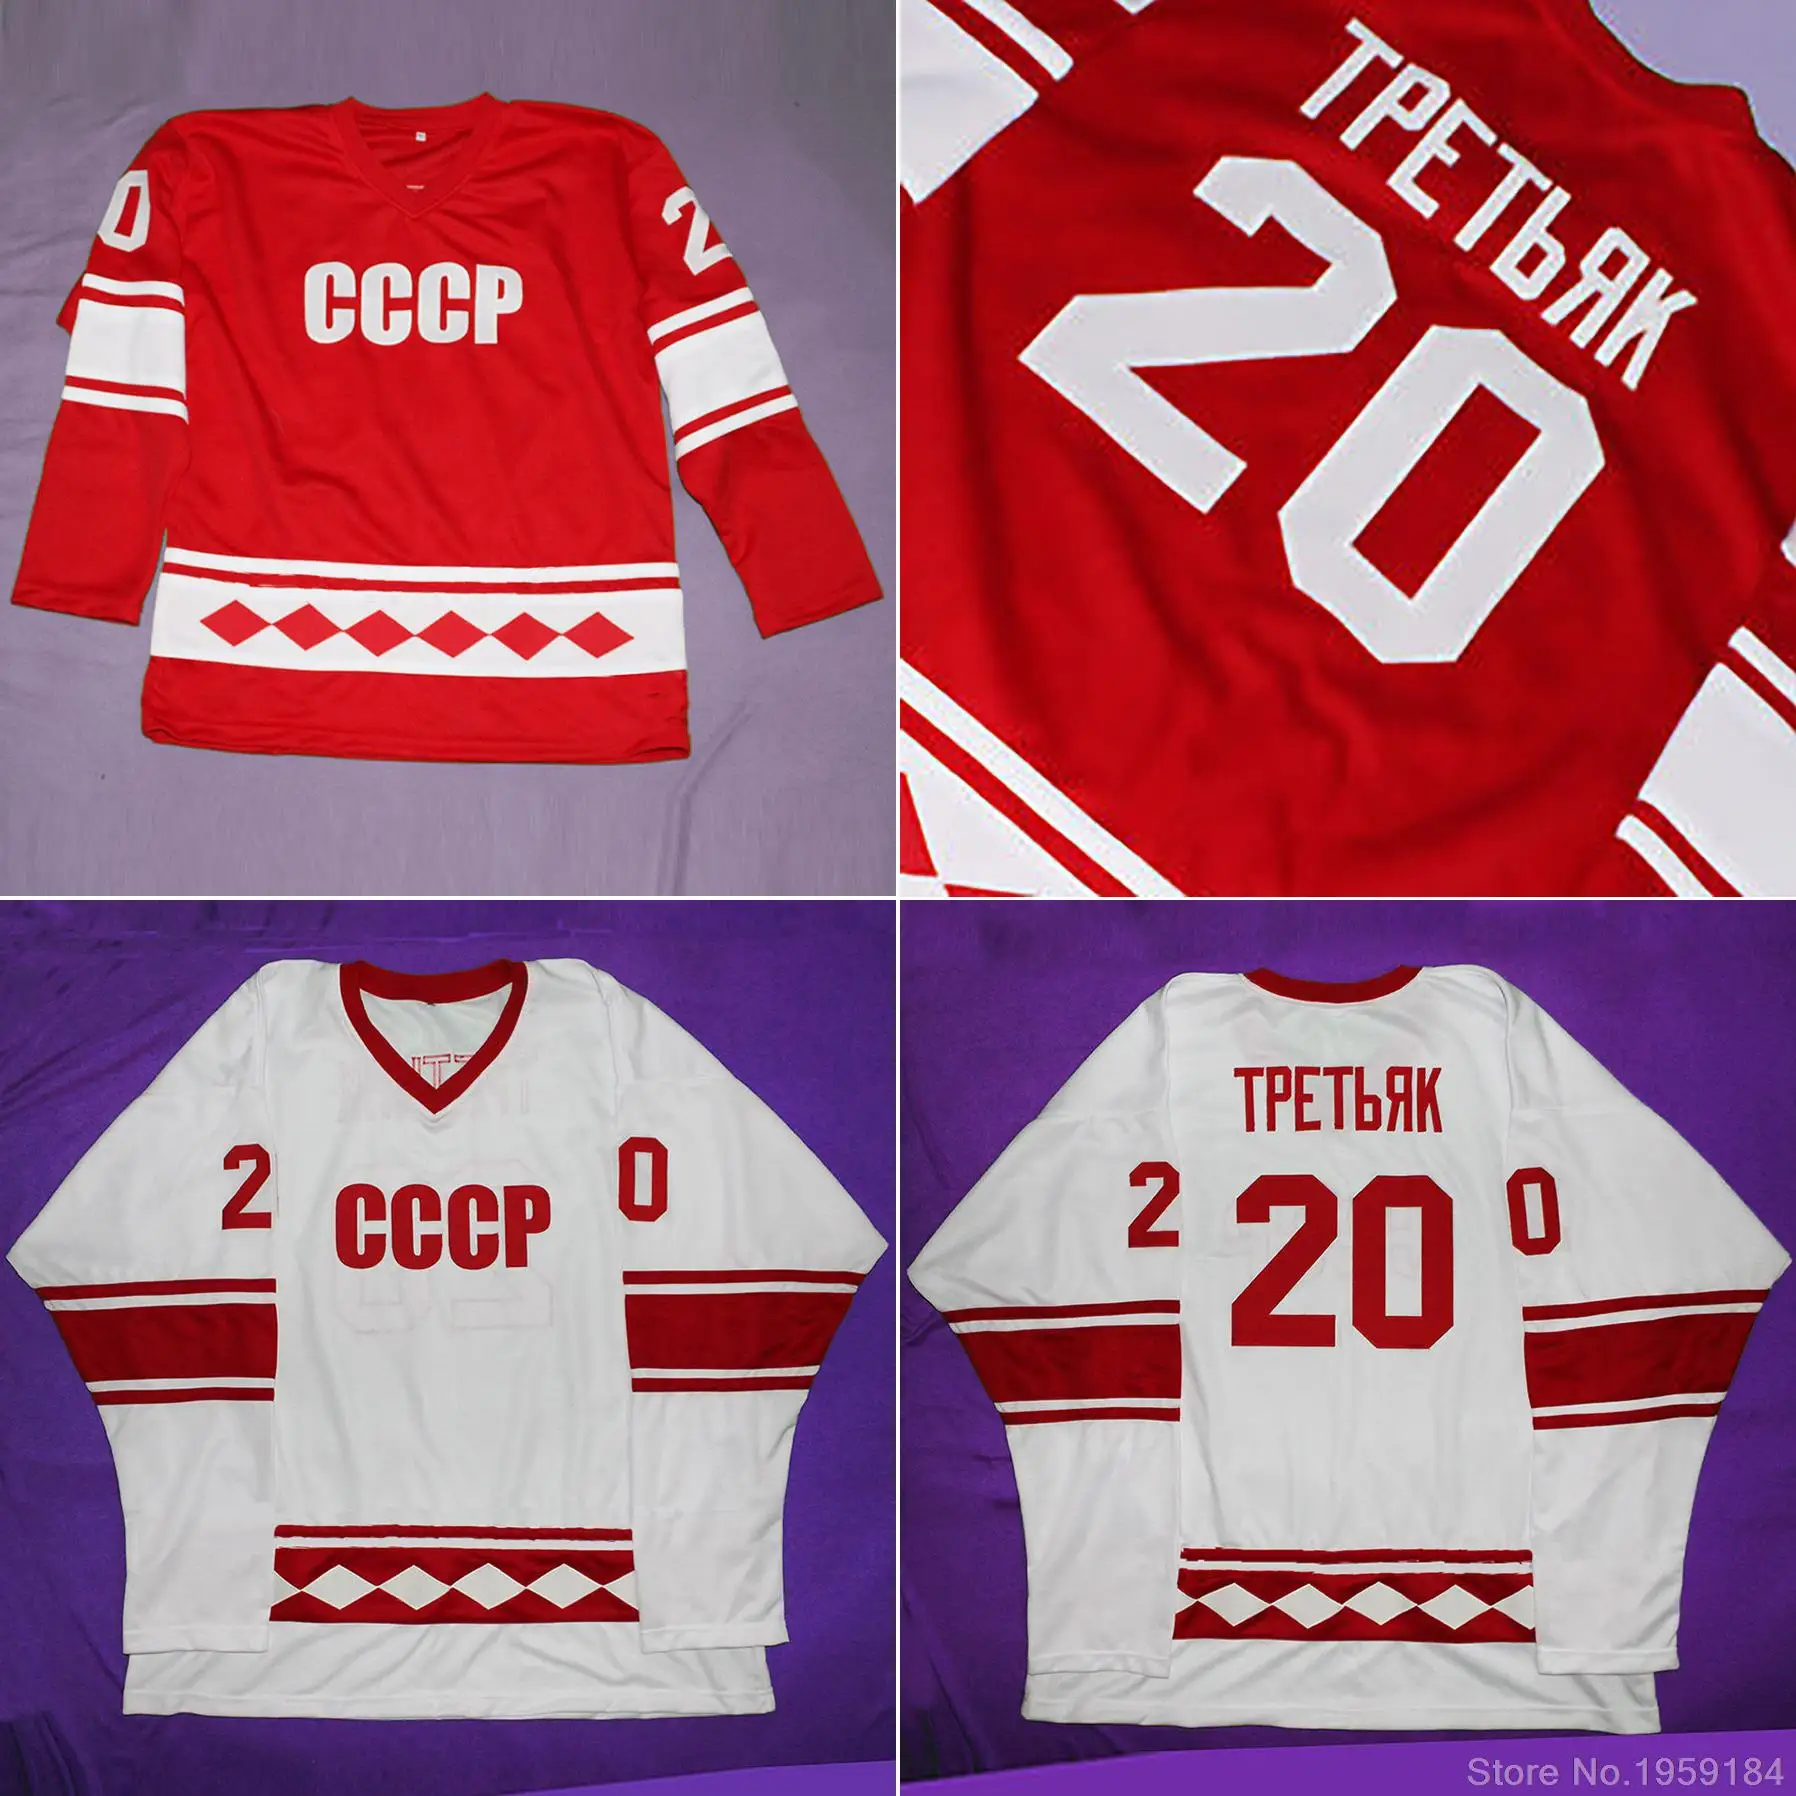 

Vladislav Tretiak #20 "GYPE" павель холре #10 CCCP 1980 хоккейная Майка вышитая по индивидуальному заказу любой номер и имя